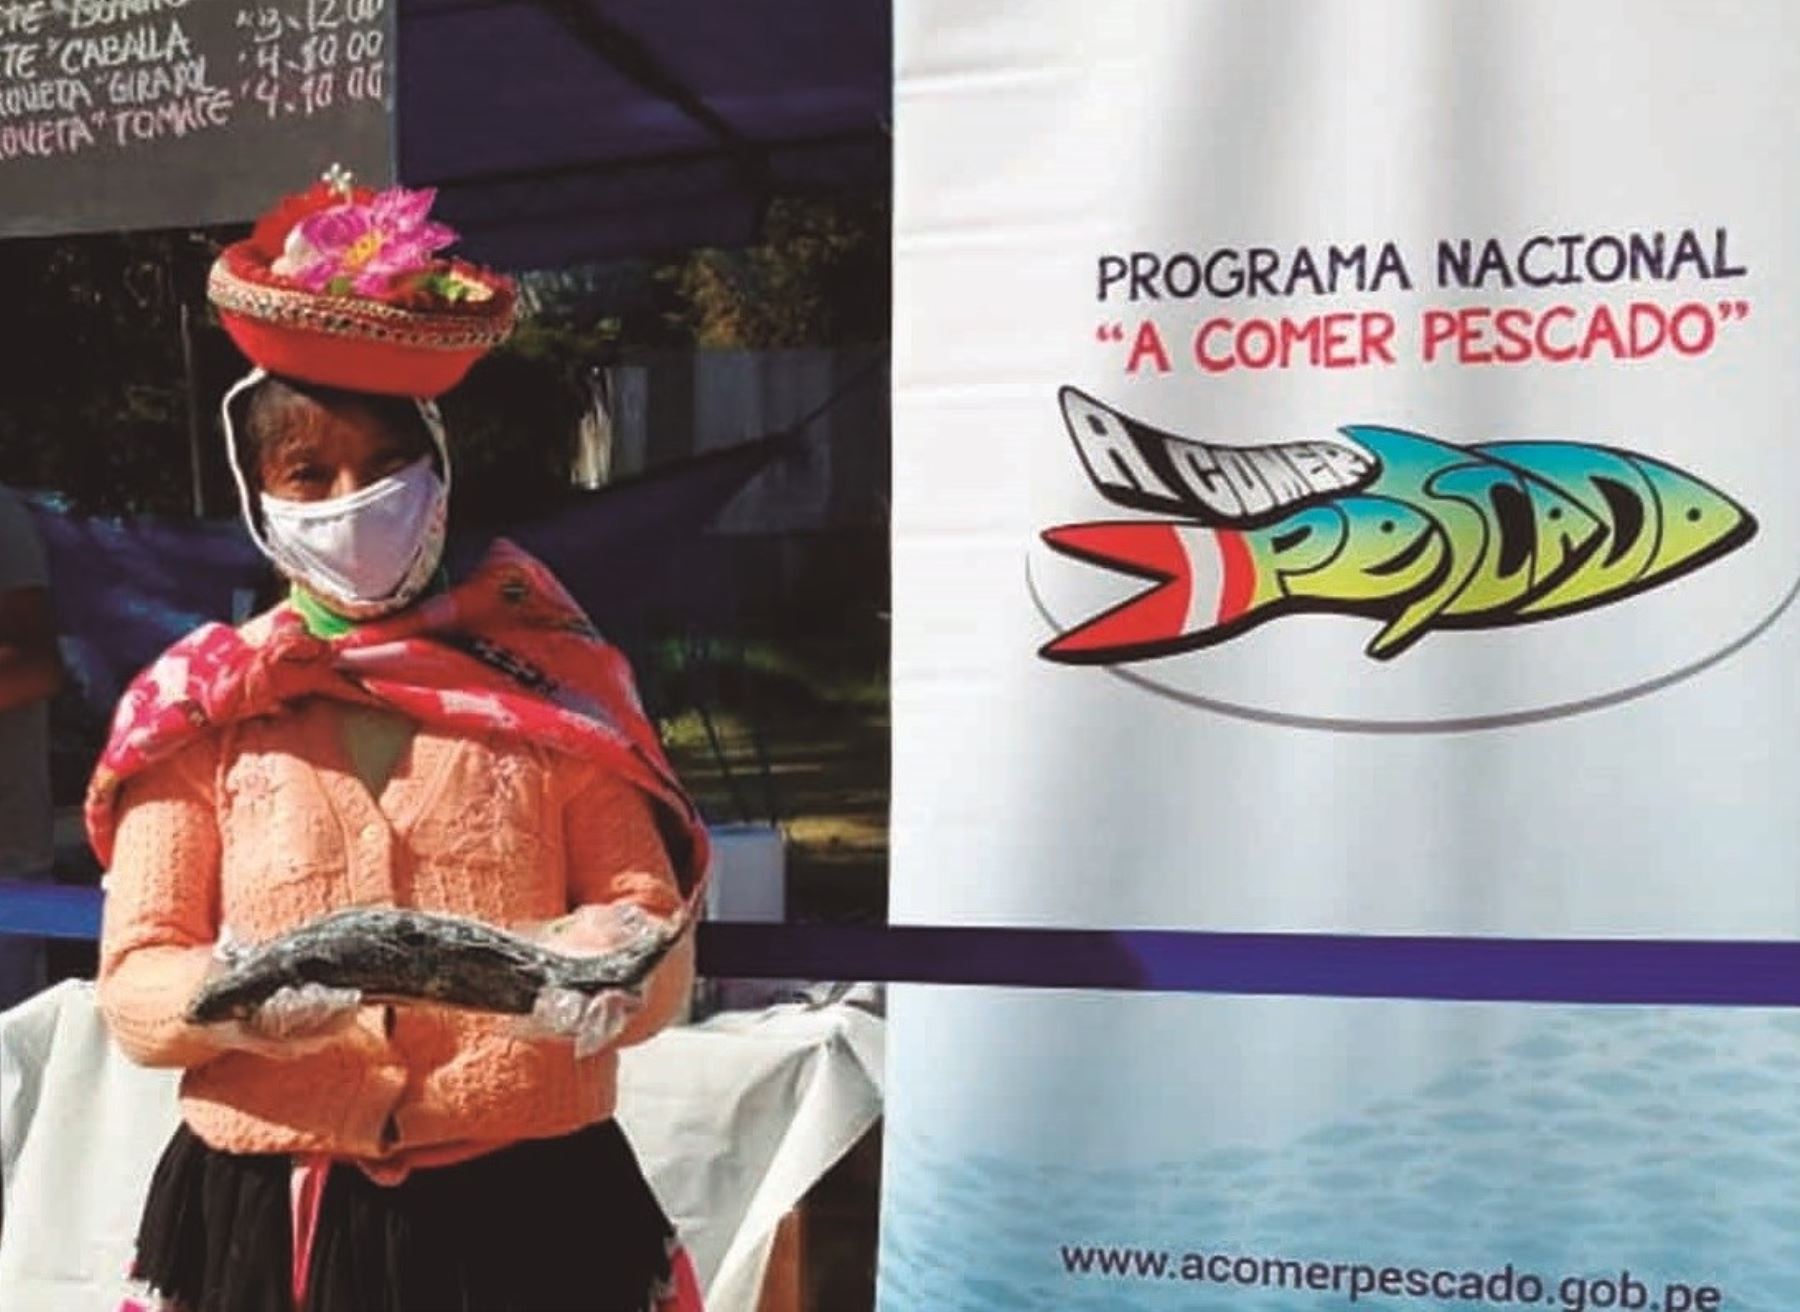 Cusco, Ayacucho y Amazonas lideraron el consumo de pescado en junio, reveló el programa A Comer Pescado.